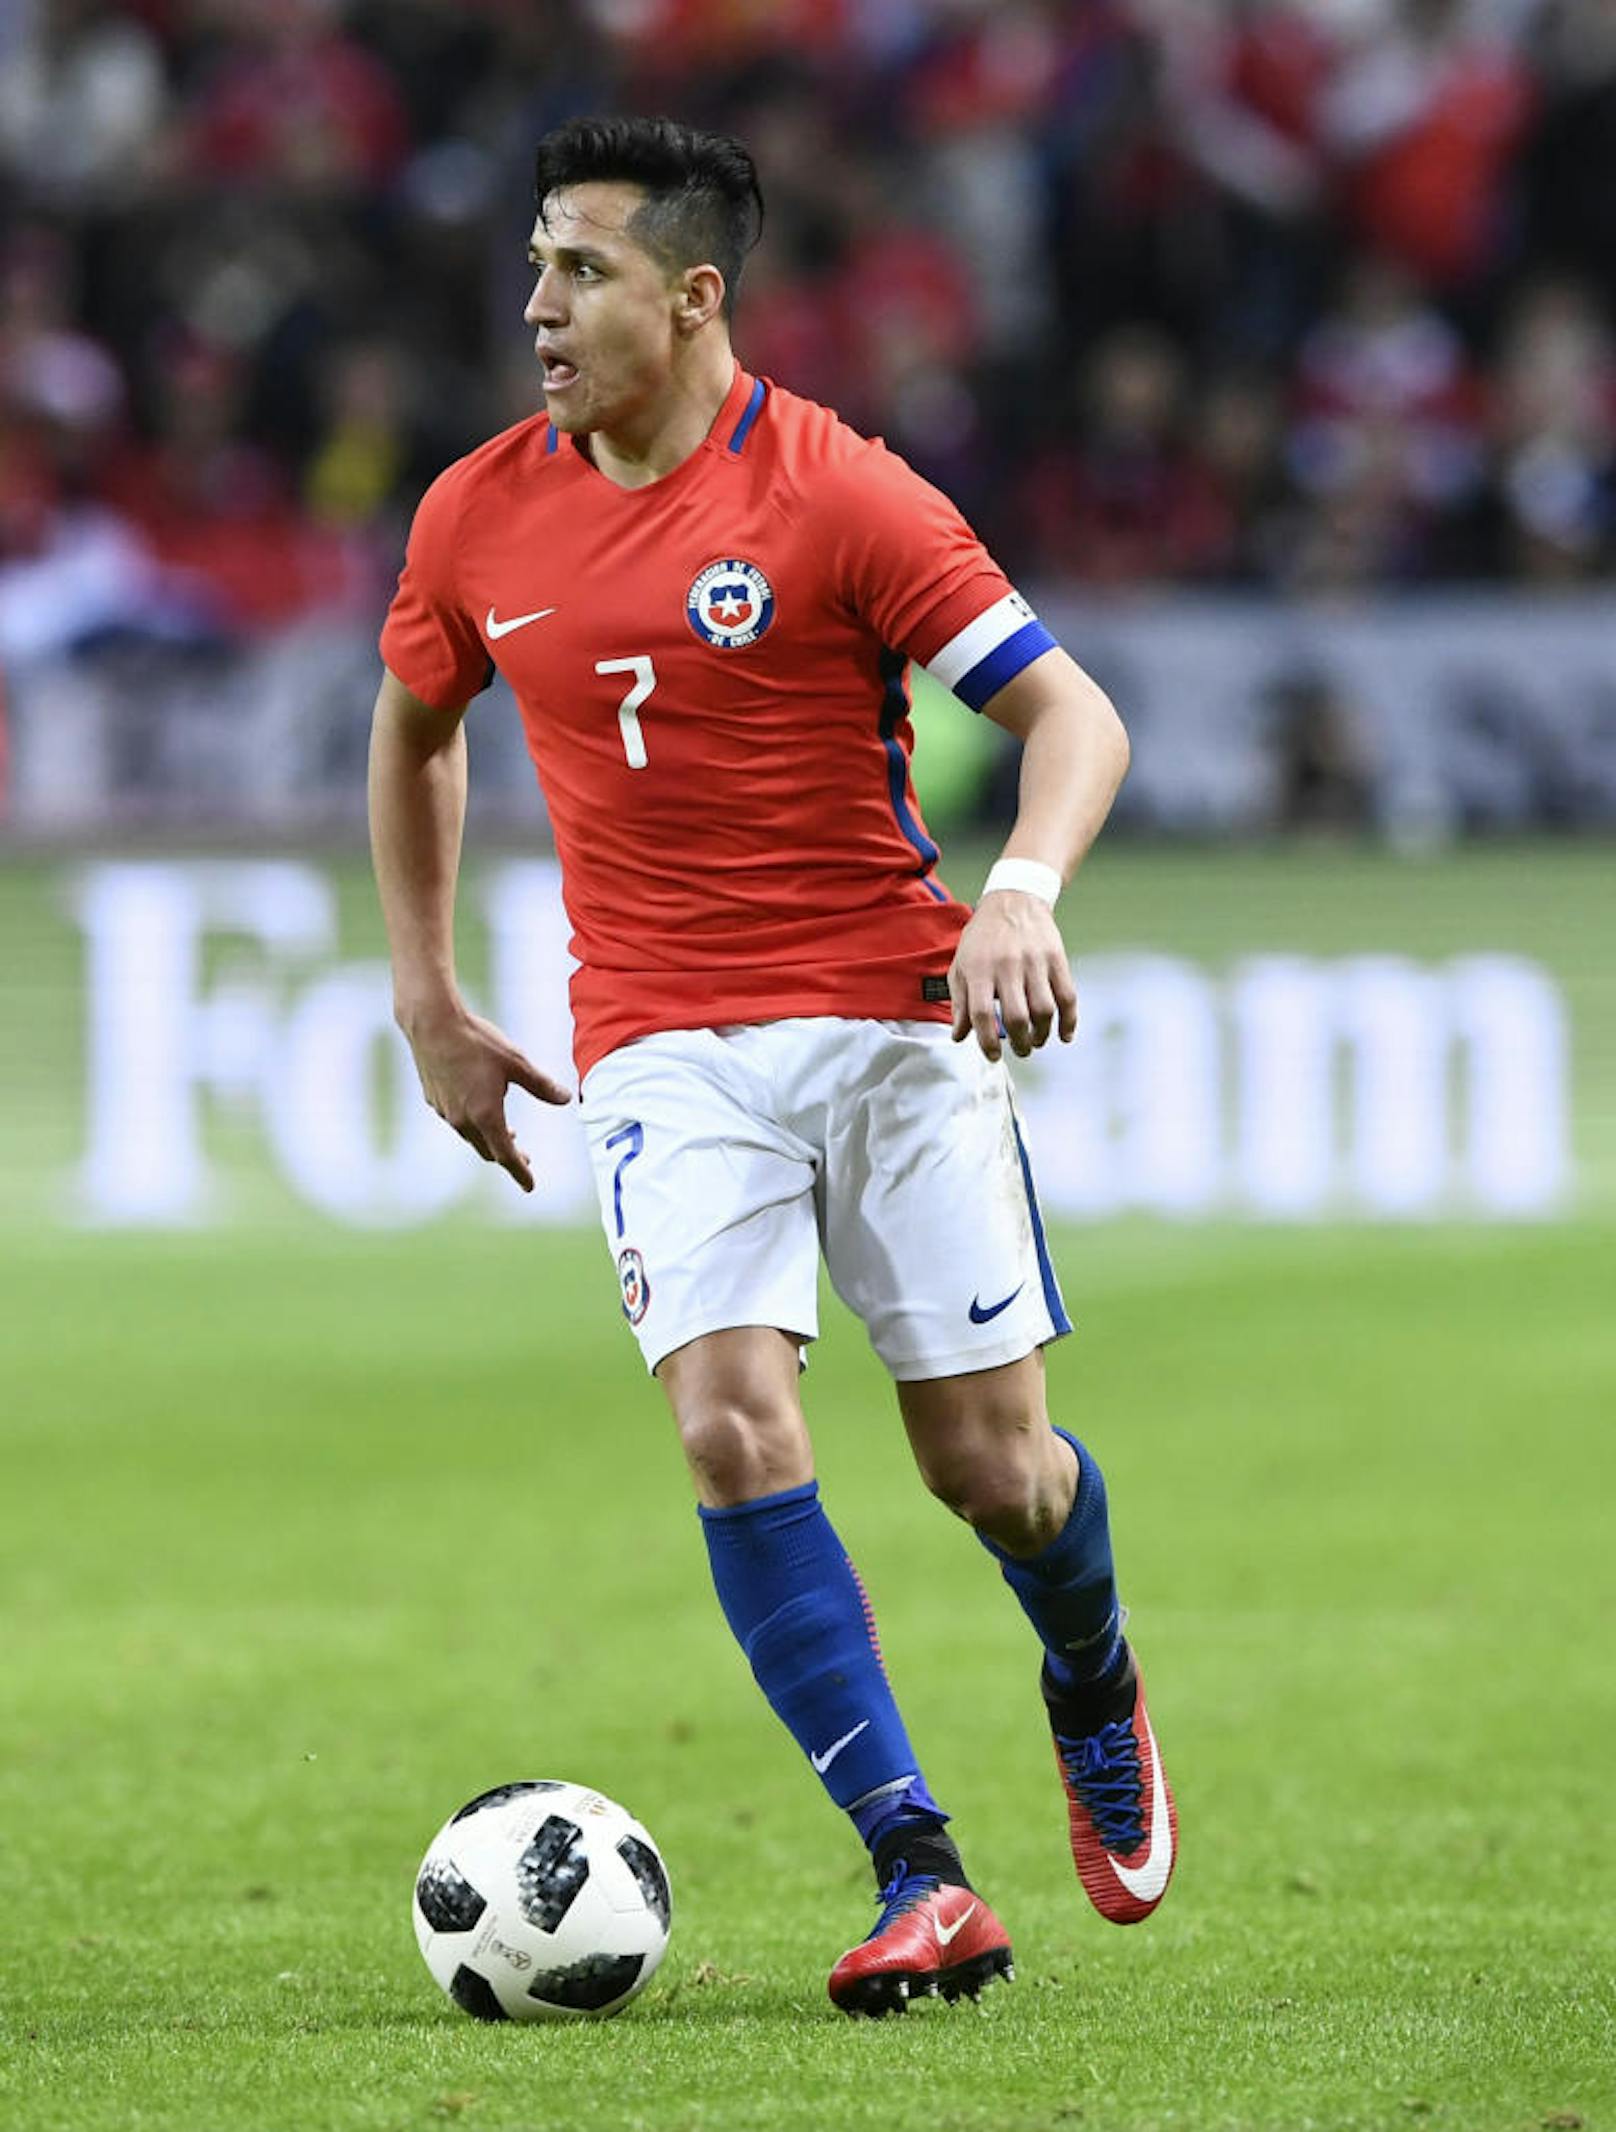 <b>Alexis Sanchez</b>: Der Flügelflitzer im Dienst von Manchester United wird die WM ebenso wie Teamkollege Vidal von der Couch verfolgen müssen. Selbst seine 13 Tore in 14 Spielen haben nicht gereicht, um Chile nach Russland zu schießen.